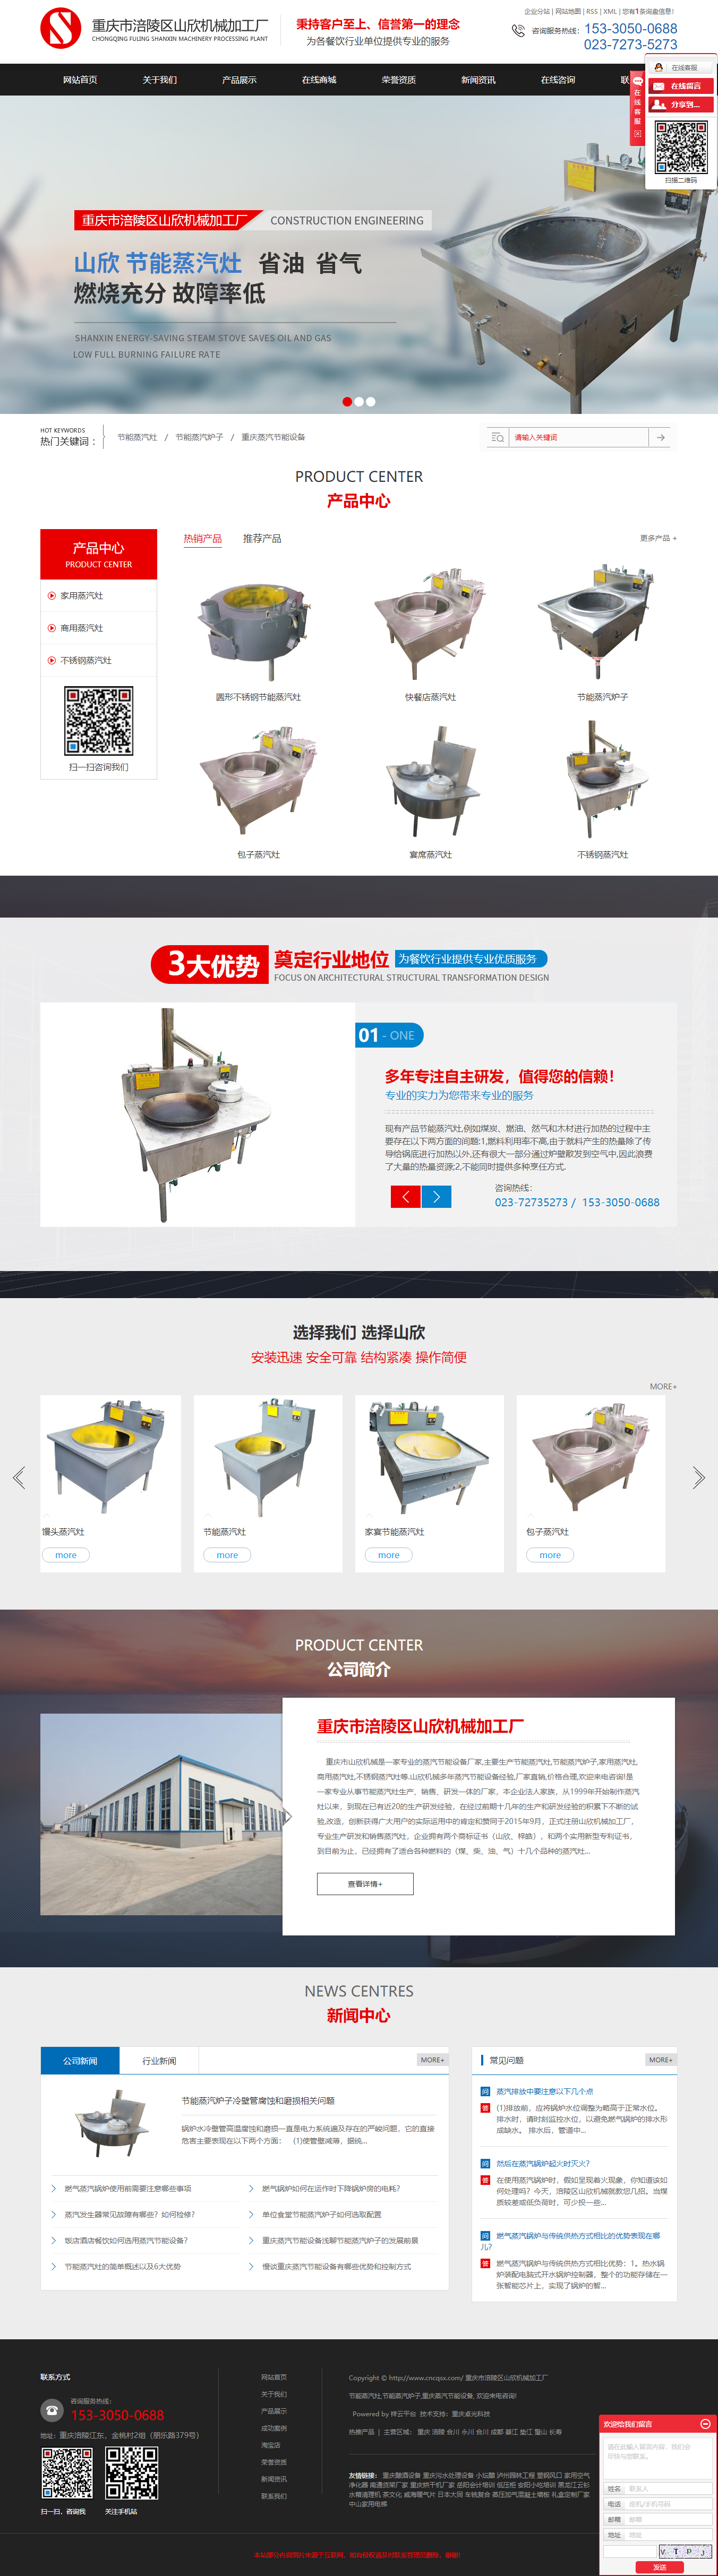 重庆市涪陵区山欣机械加工厂网站案例